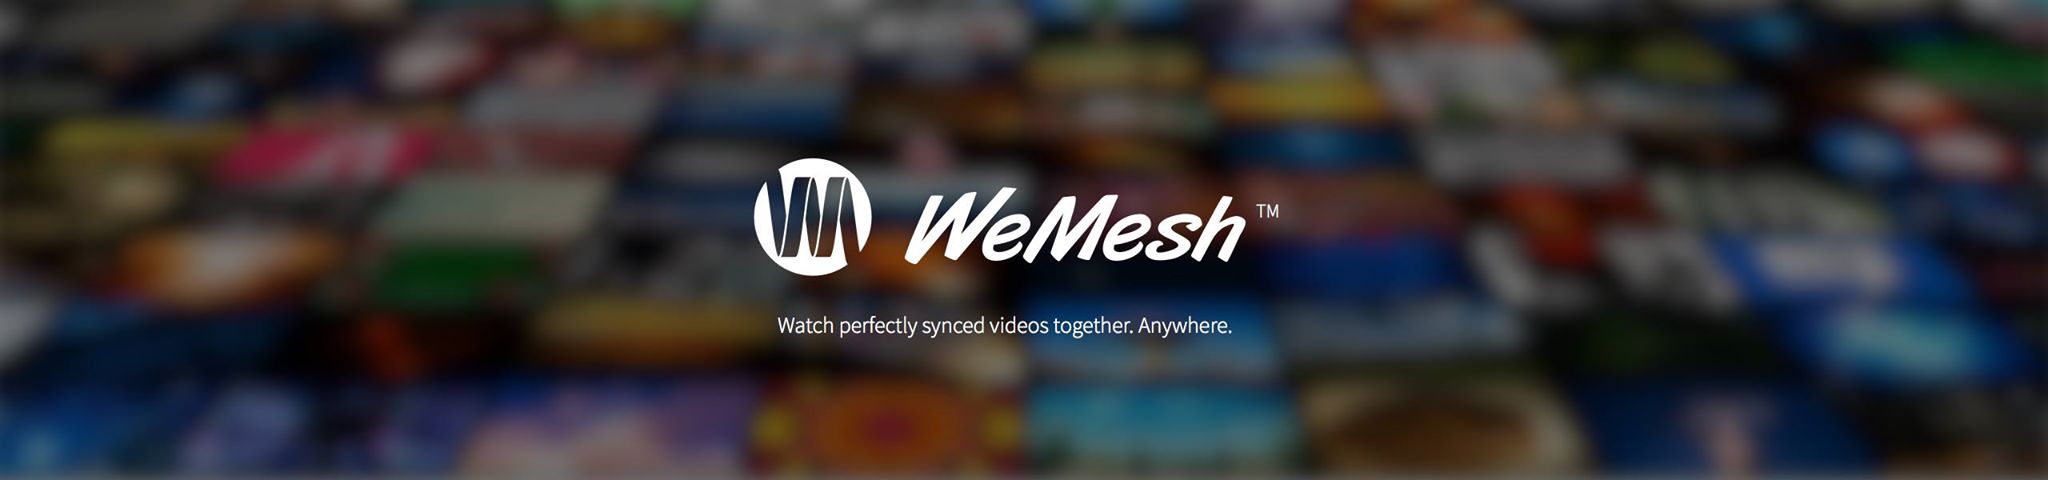 Convierte los vídeos en una experiencia social creando una app como WeMesh